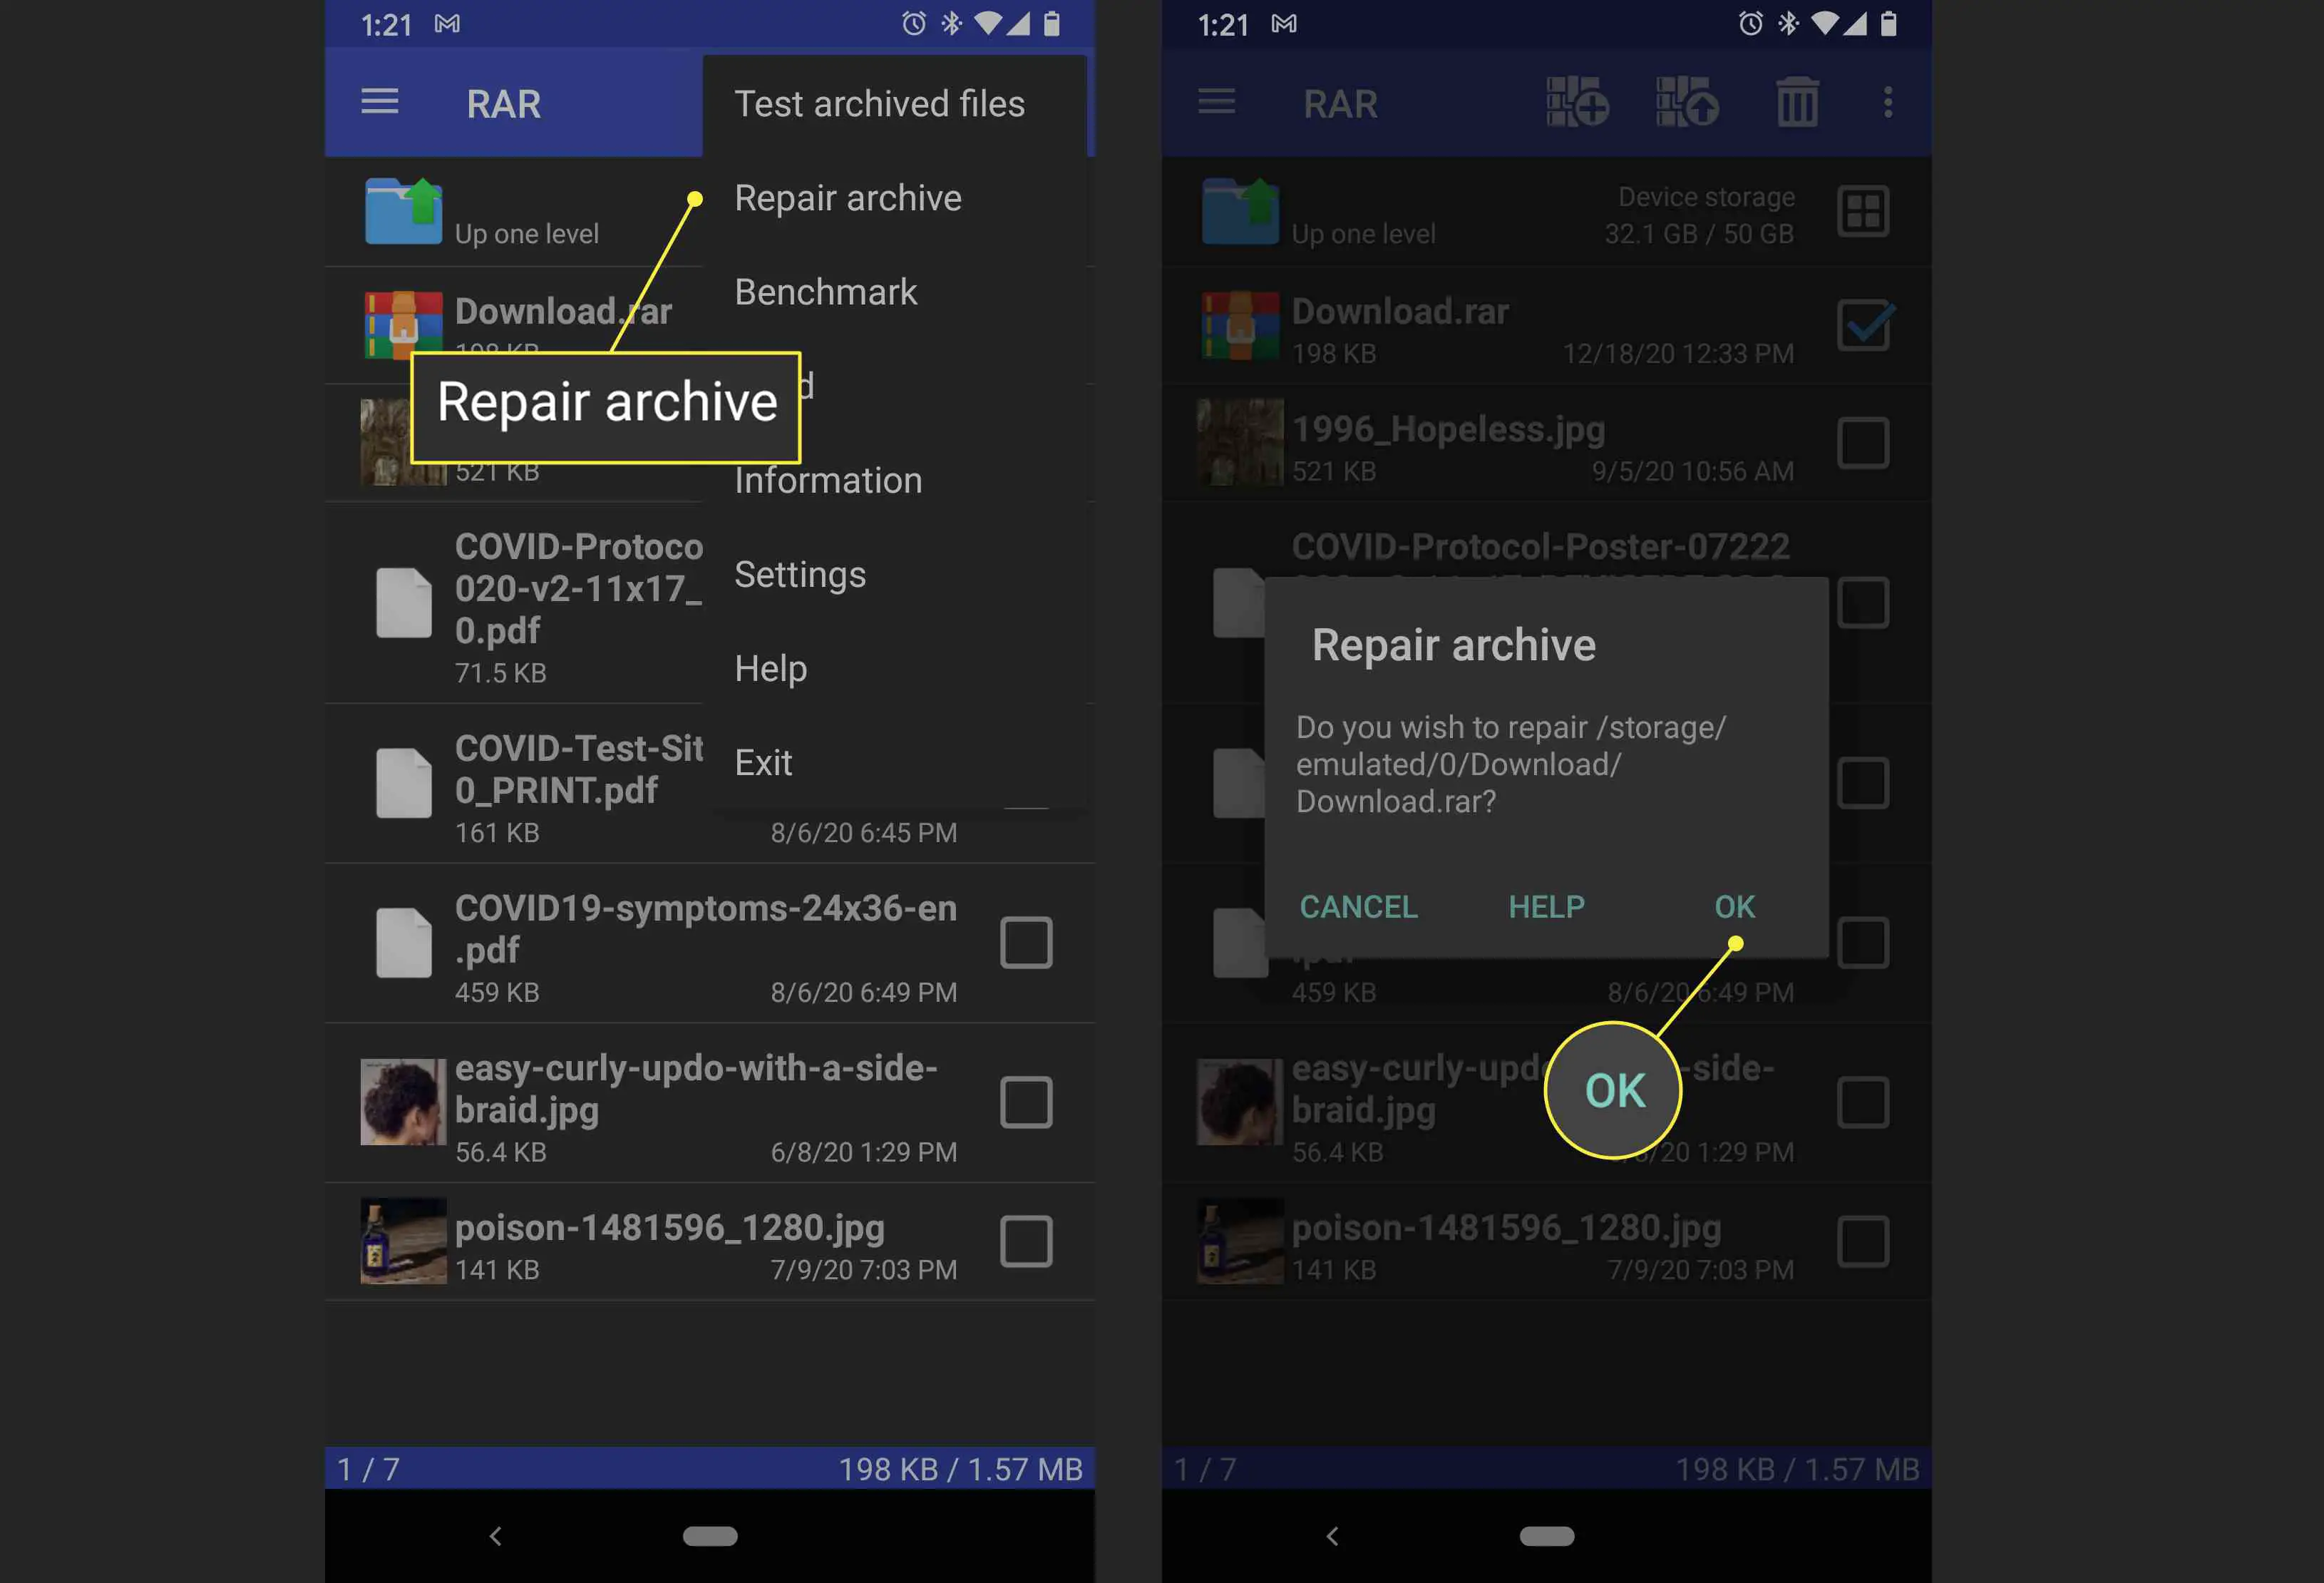 Um usuário do Android repara um arquivo .rar corrompido com o aplicativo RAR